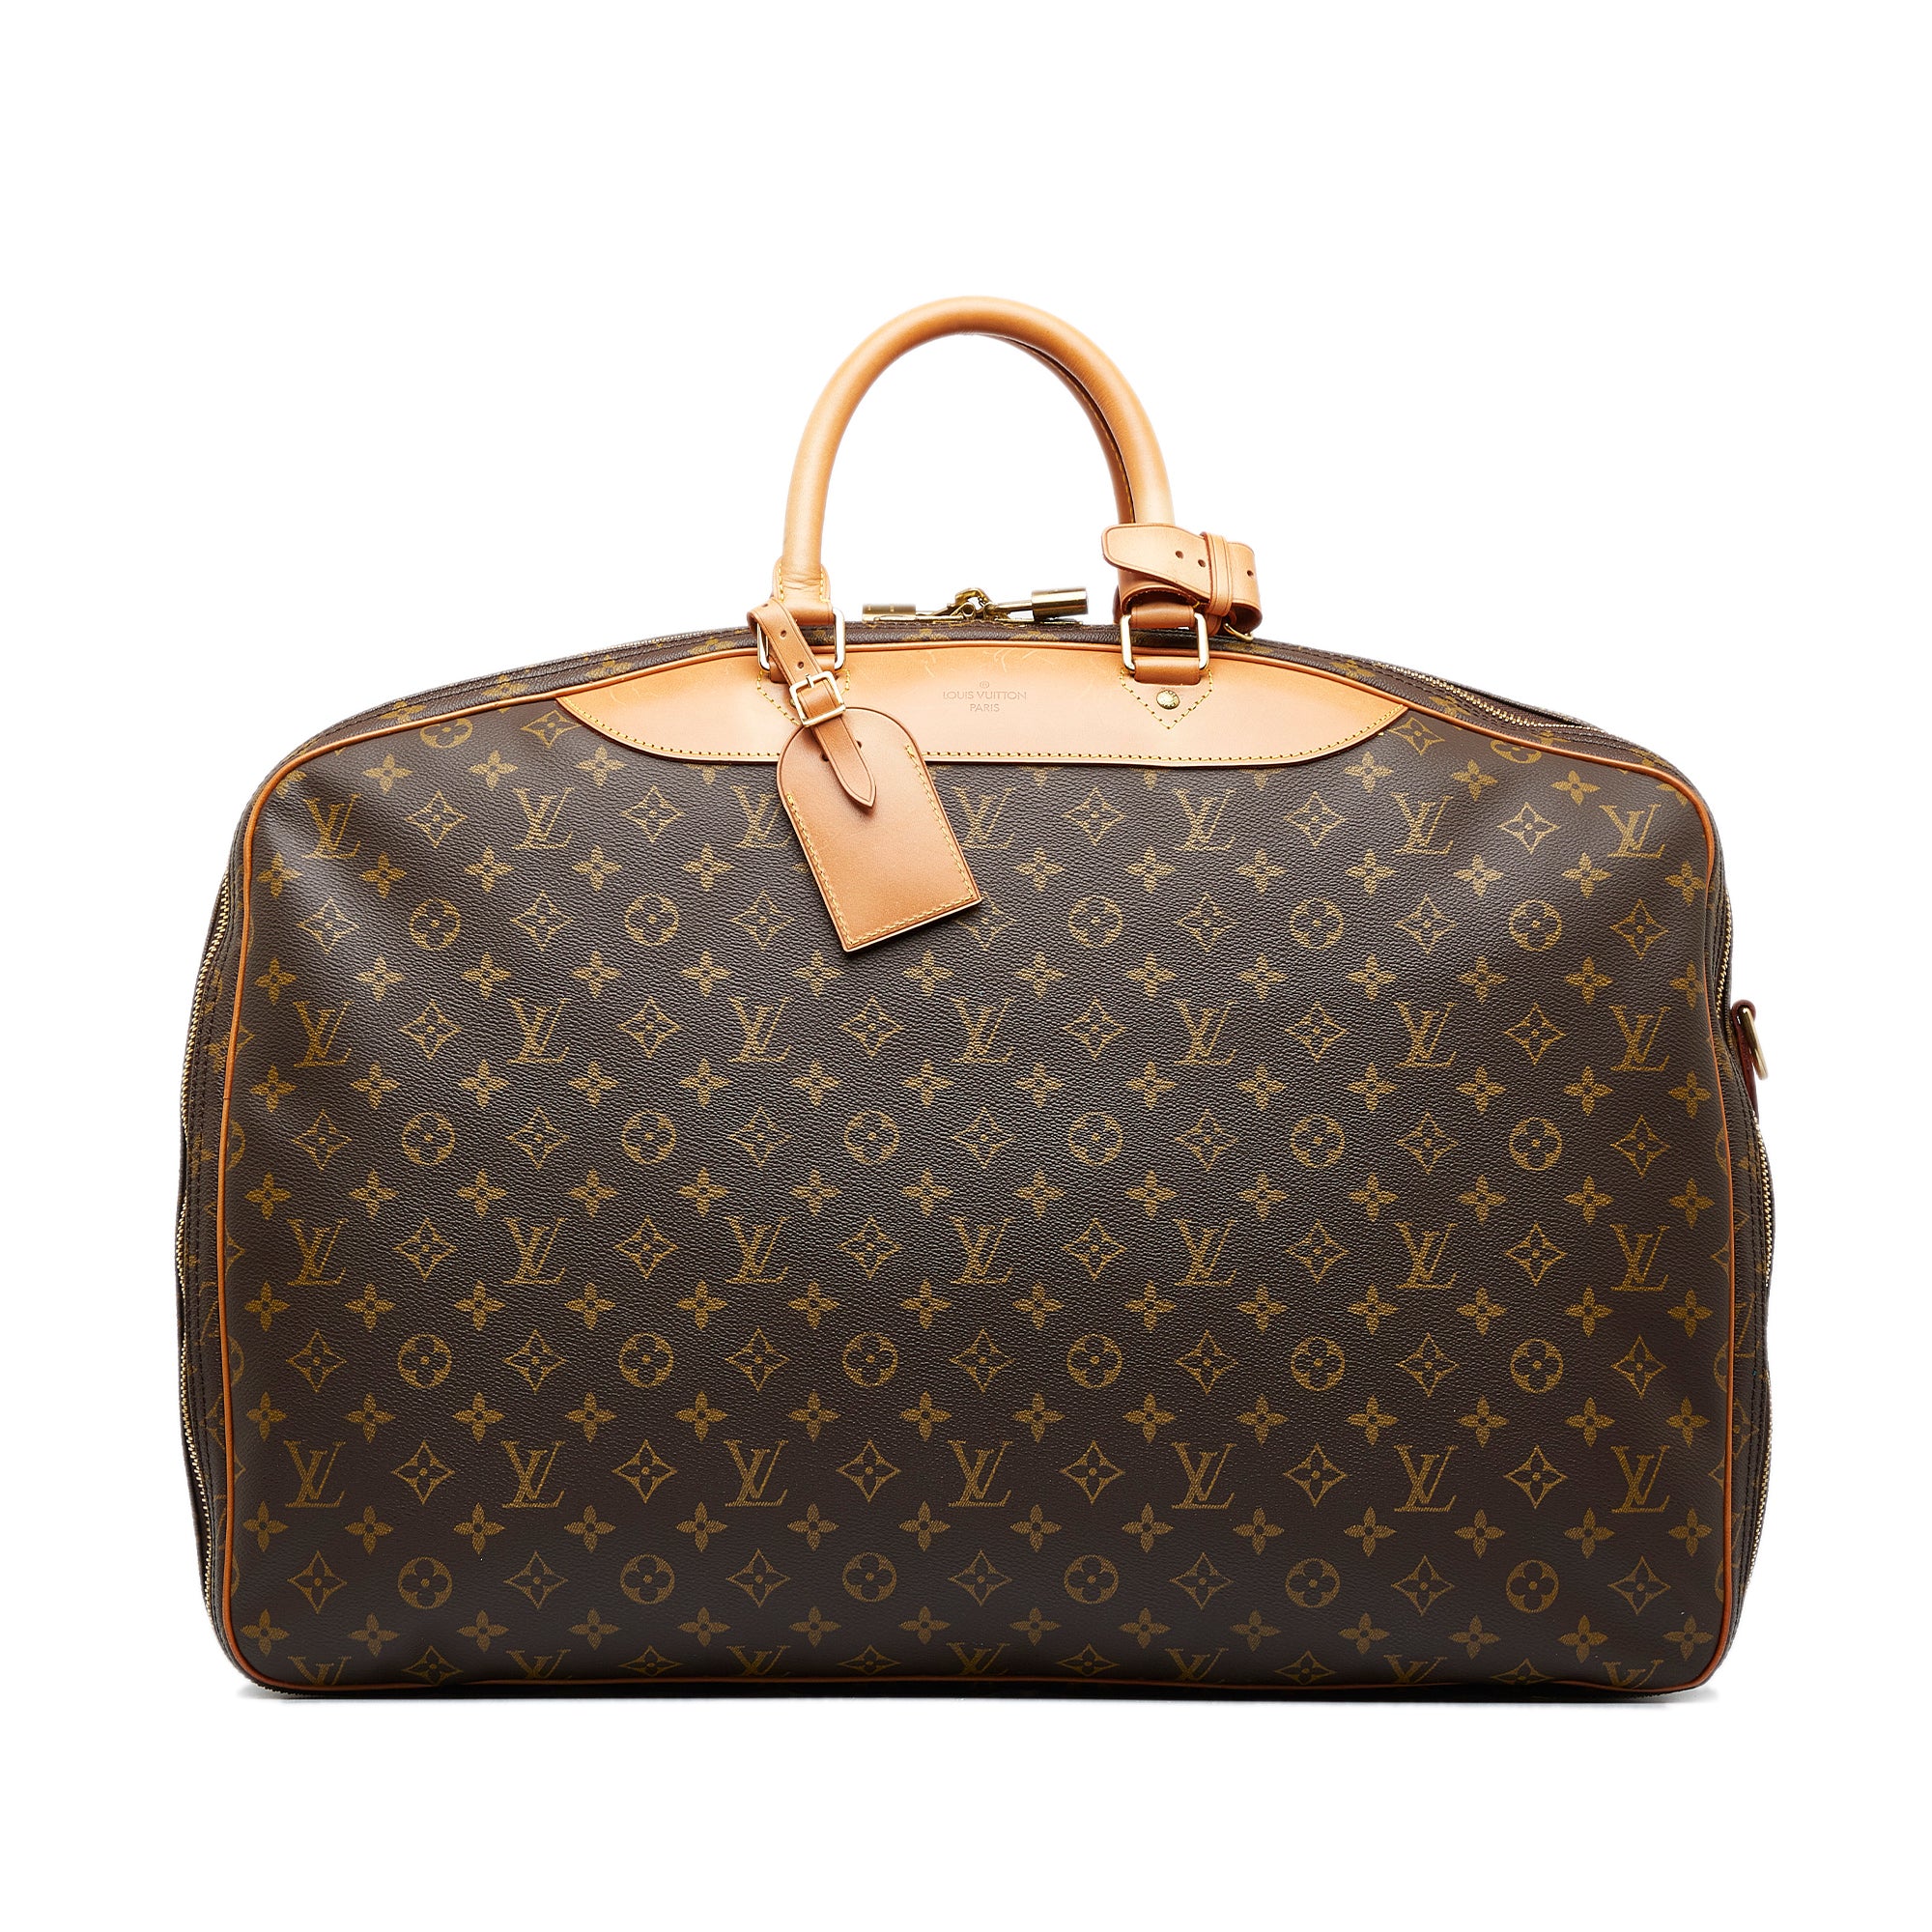 AUTHENTIC Louis Vuitton Monogram Canvas Alize 2 Poches Travel Bag